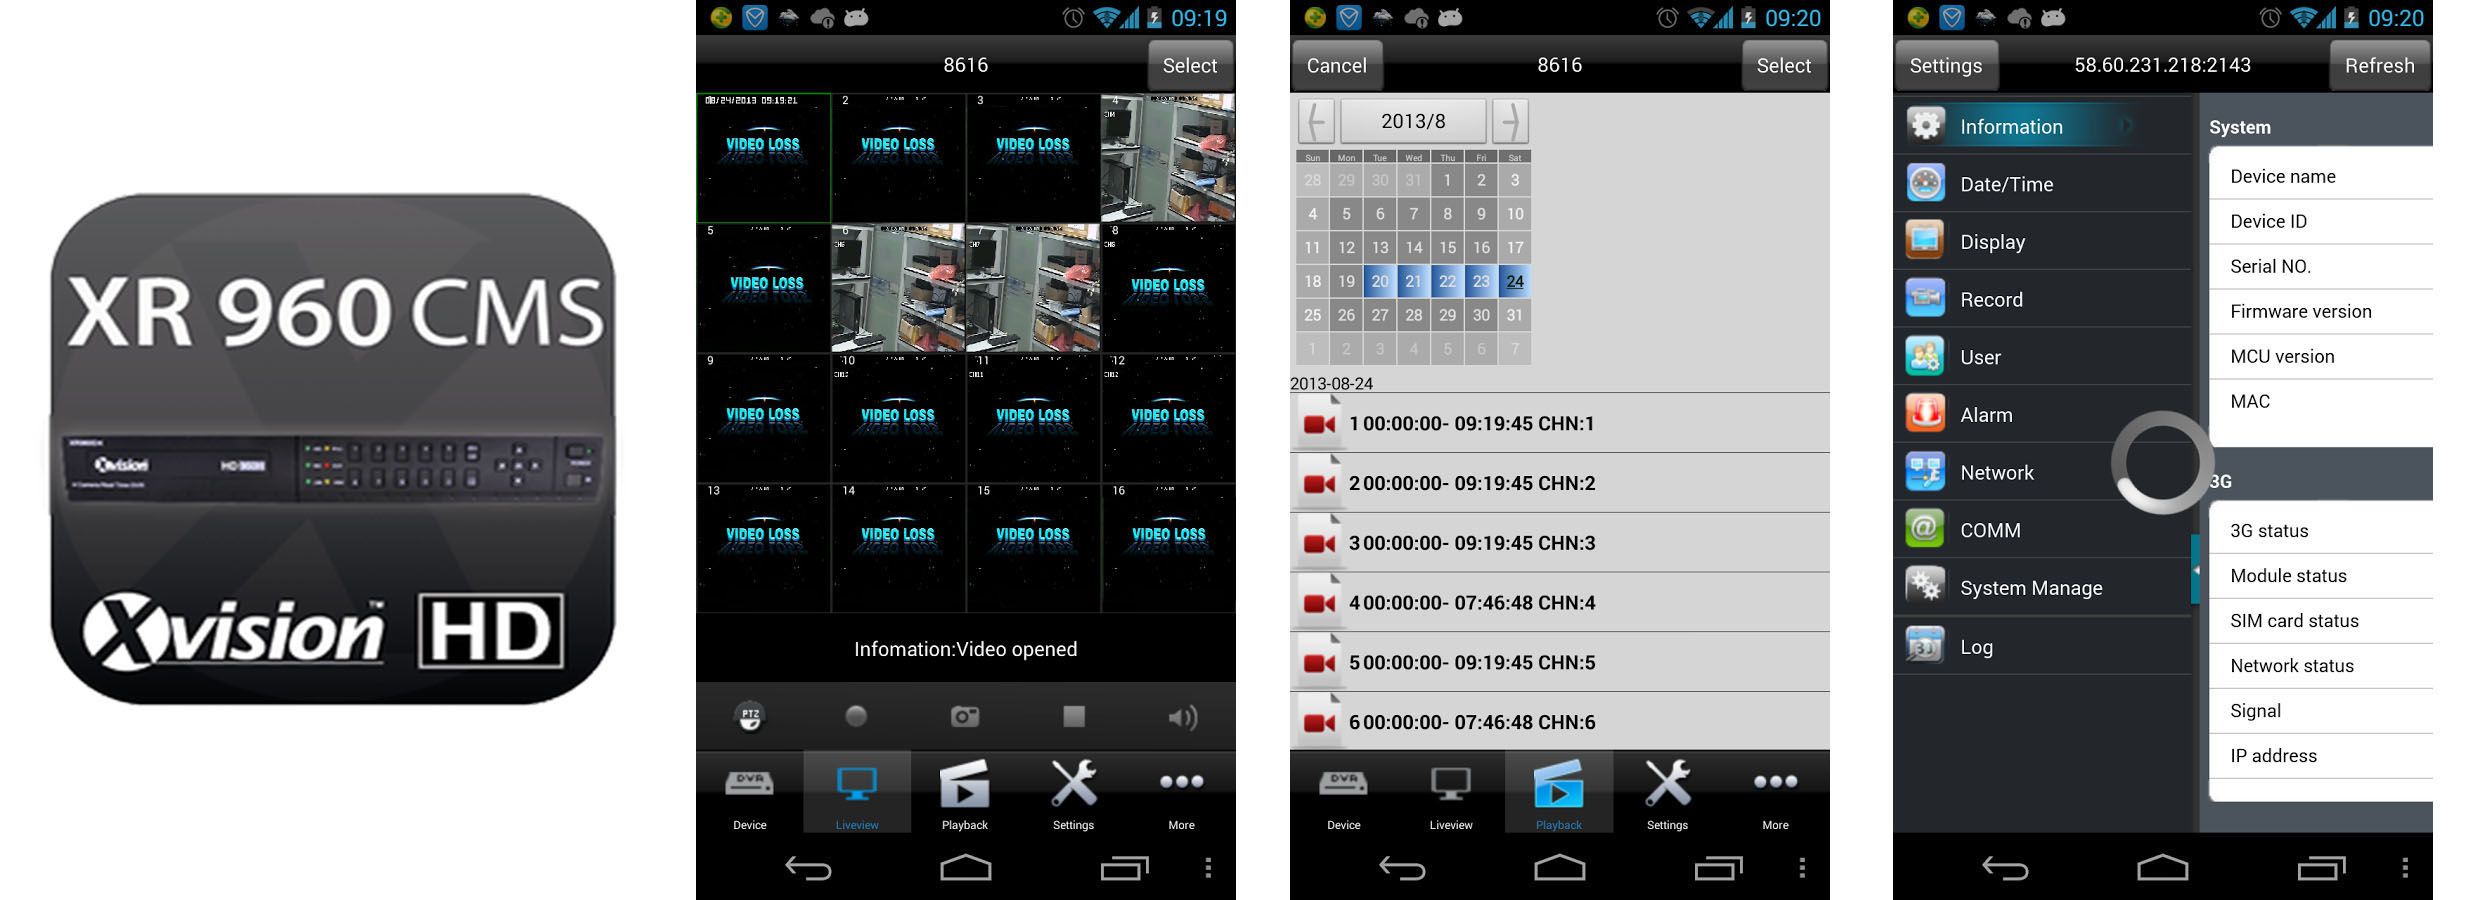 Aplikacia XR 960 cms na telefony komórkowe